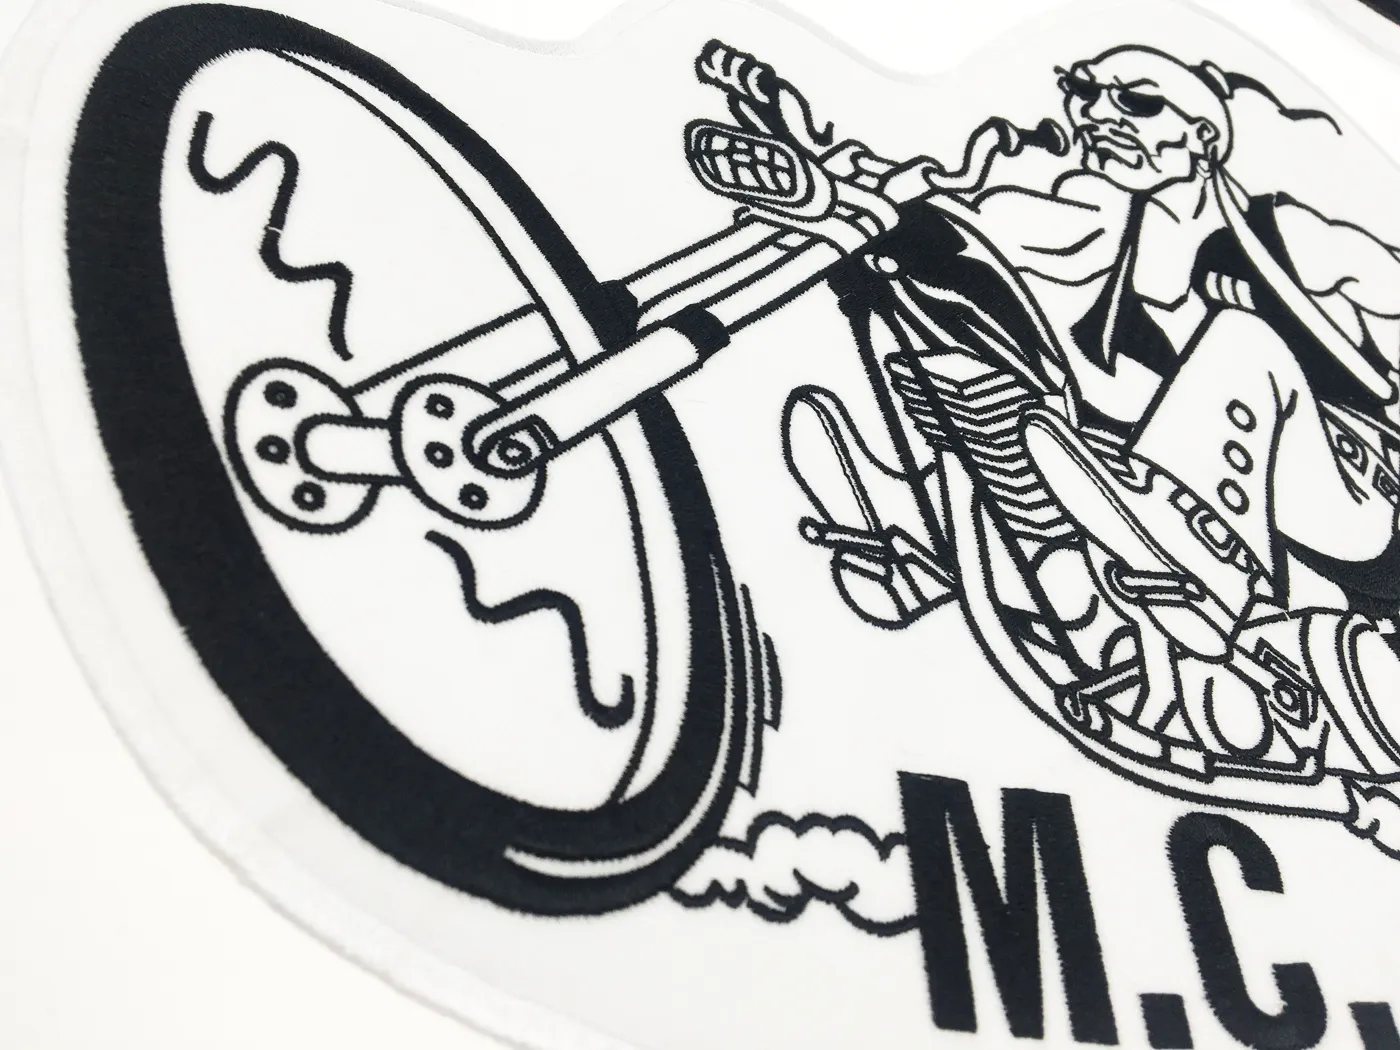 MONGOLS NOMAD MC バイカーベスト刺繍パッチ 1% MFFM IN メモリーアイロンジャケット裏全面オートバイ Patch194t